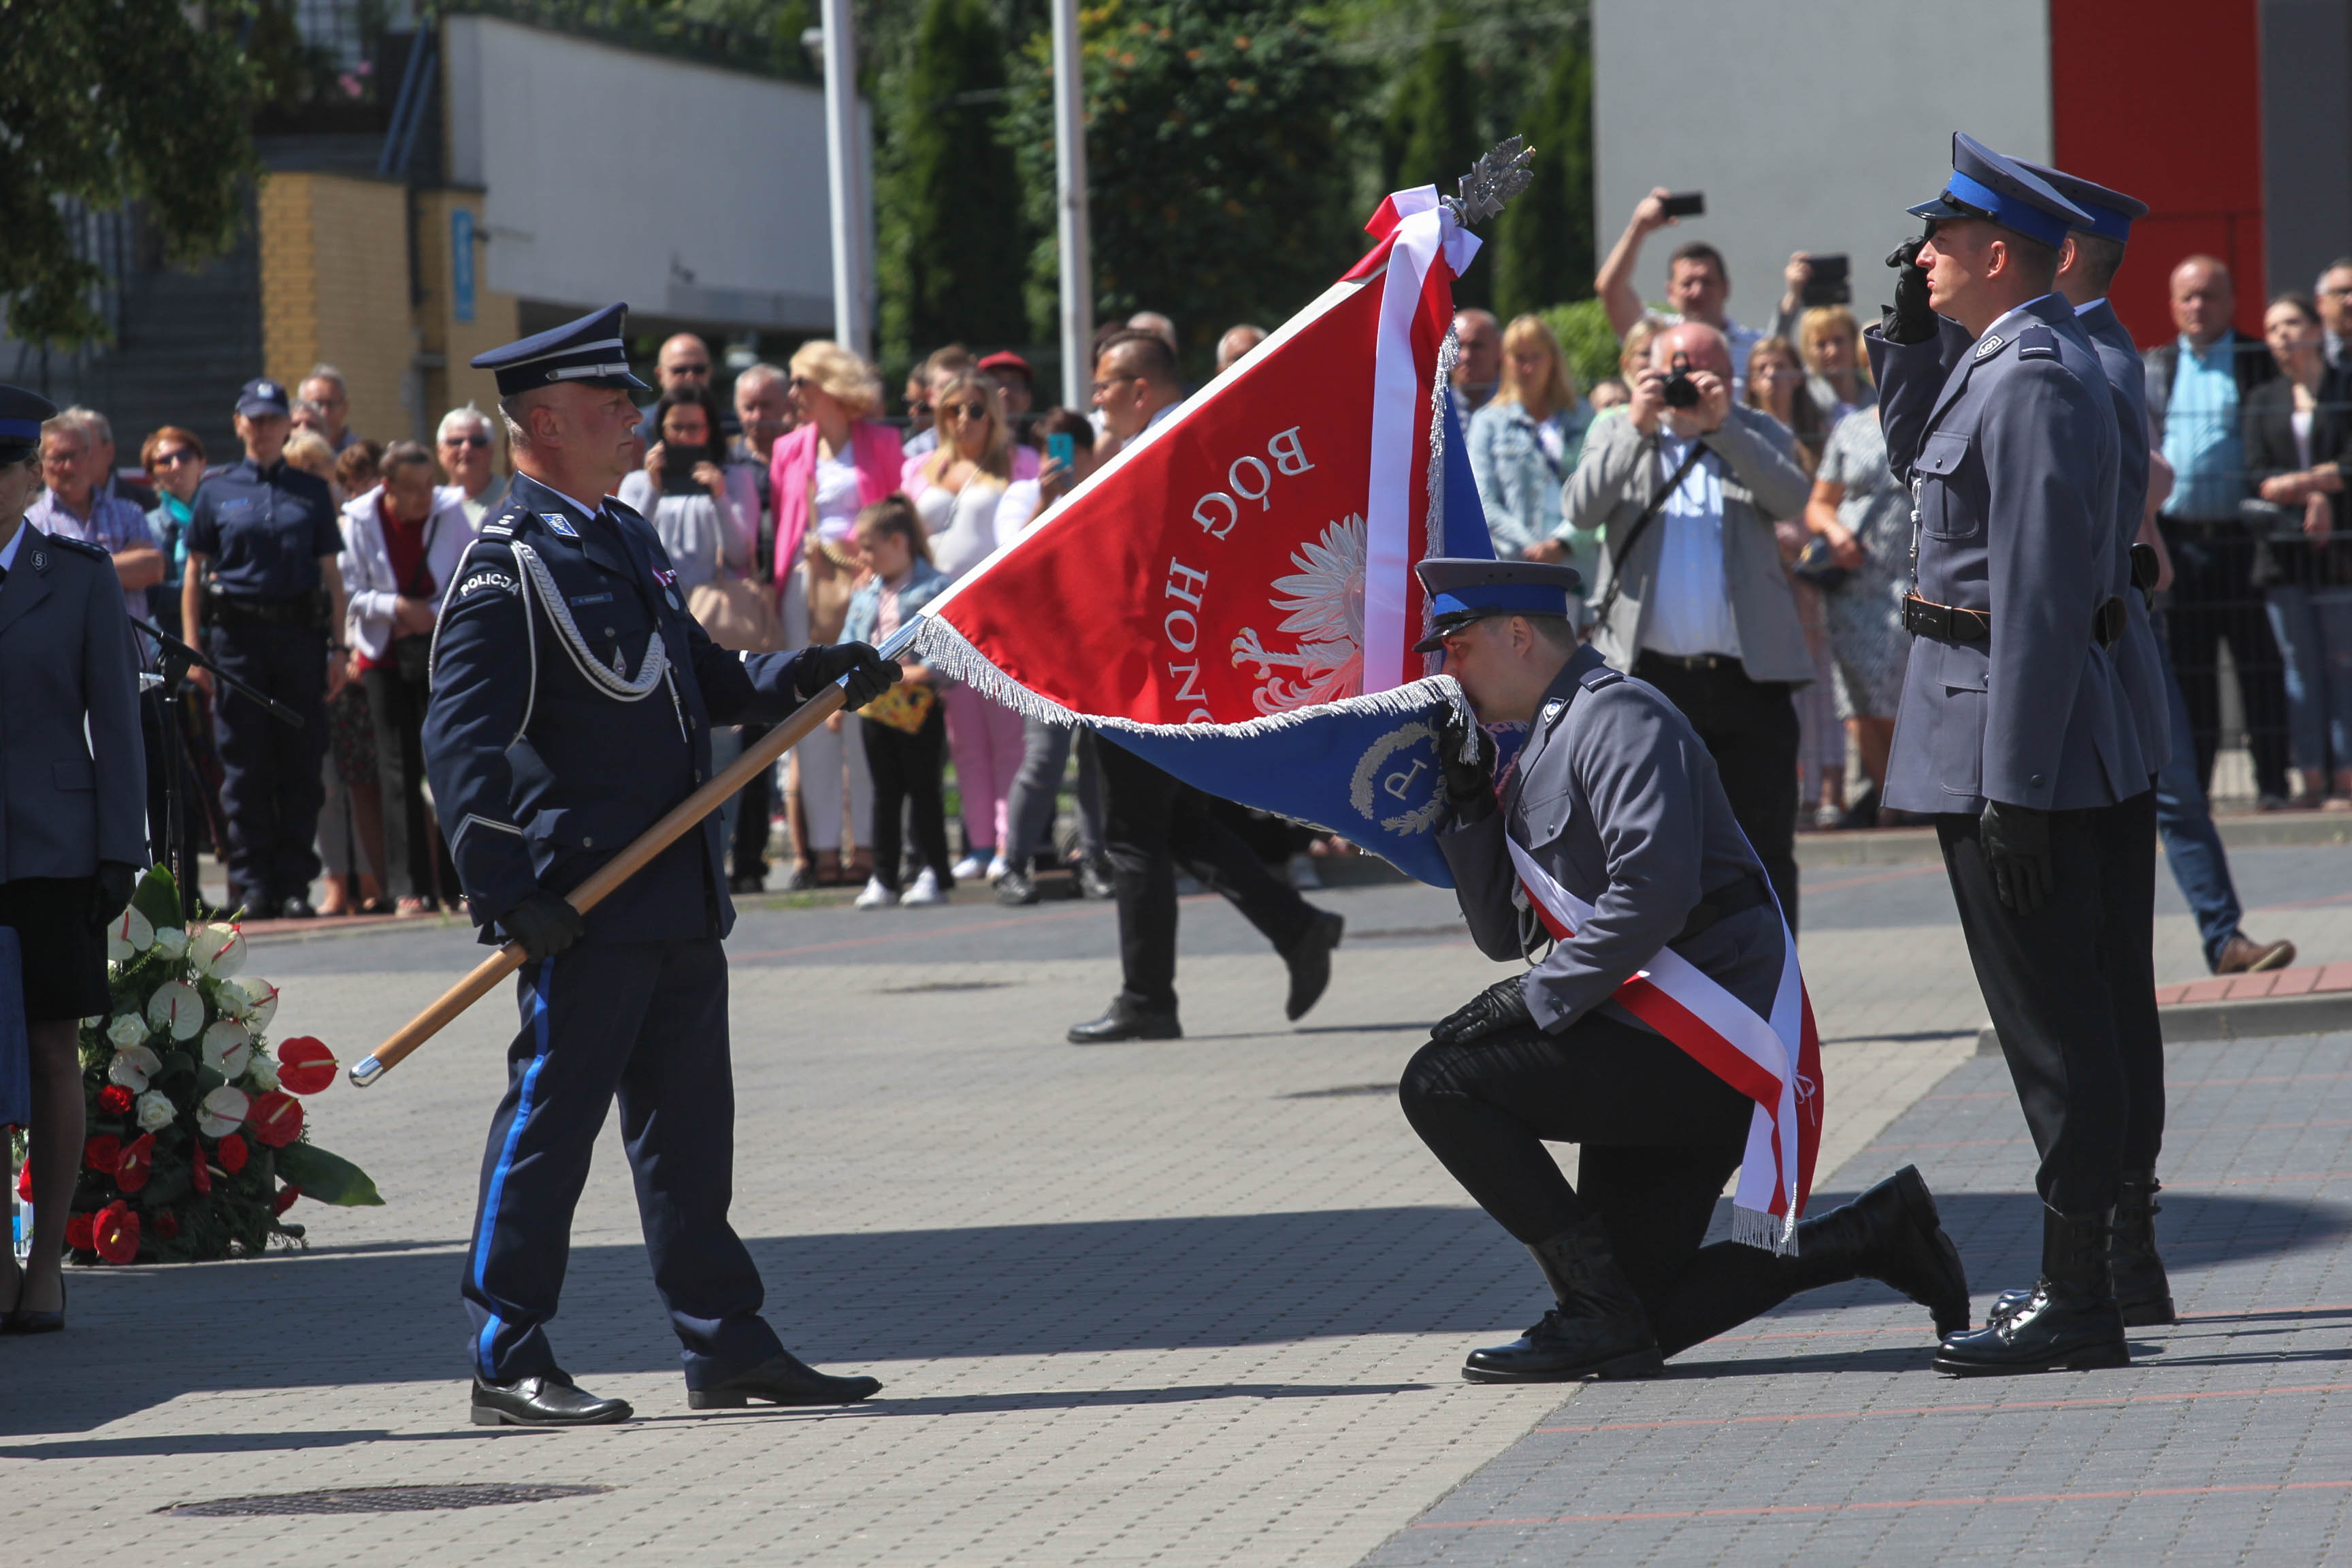 Wojewódzkie Obchody Święta Policji oraz wręczenie sztandaru zambrowskiej jednostce Policji